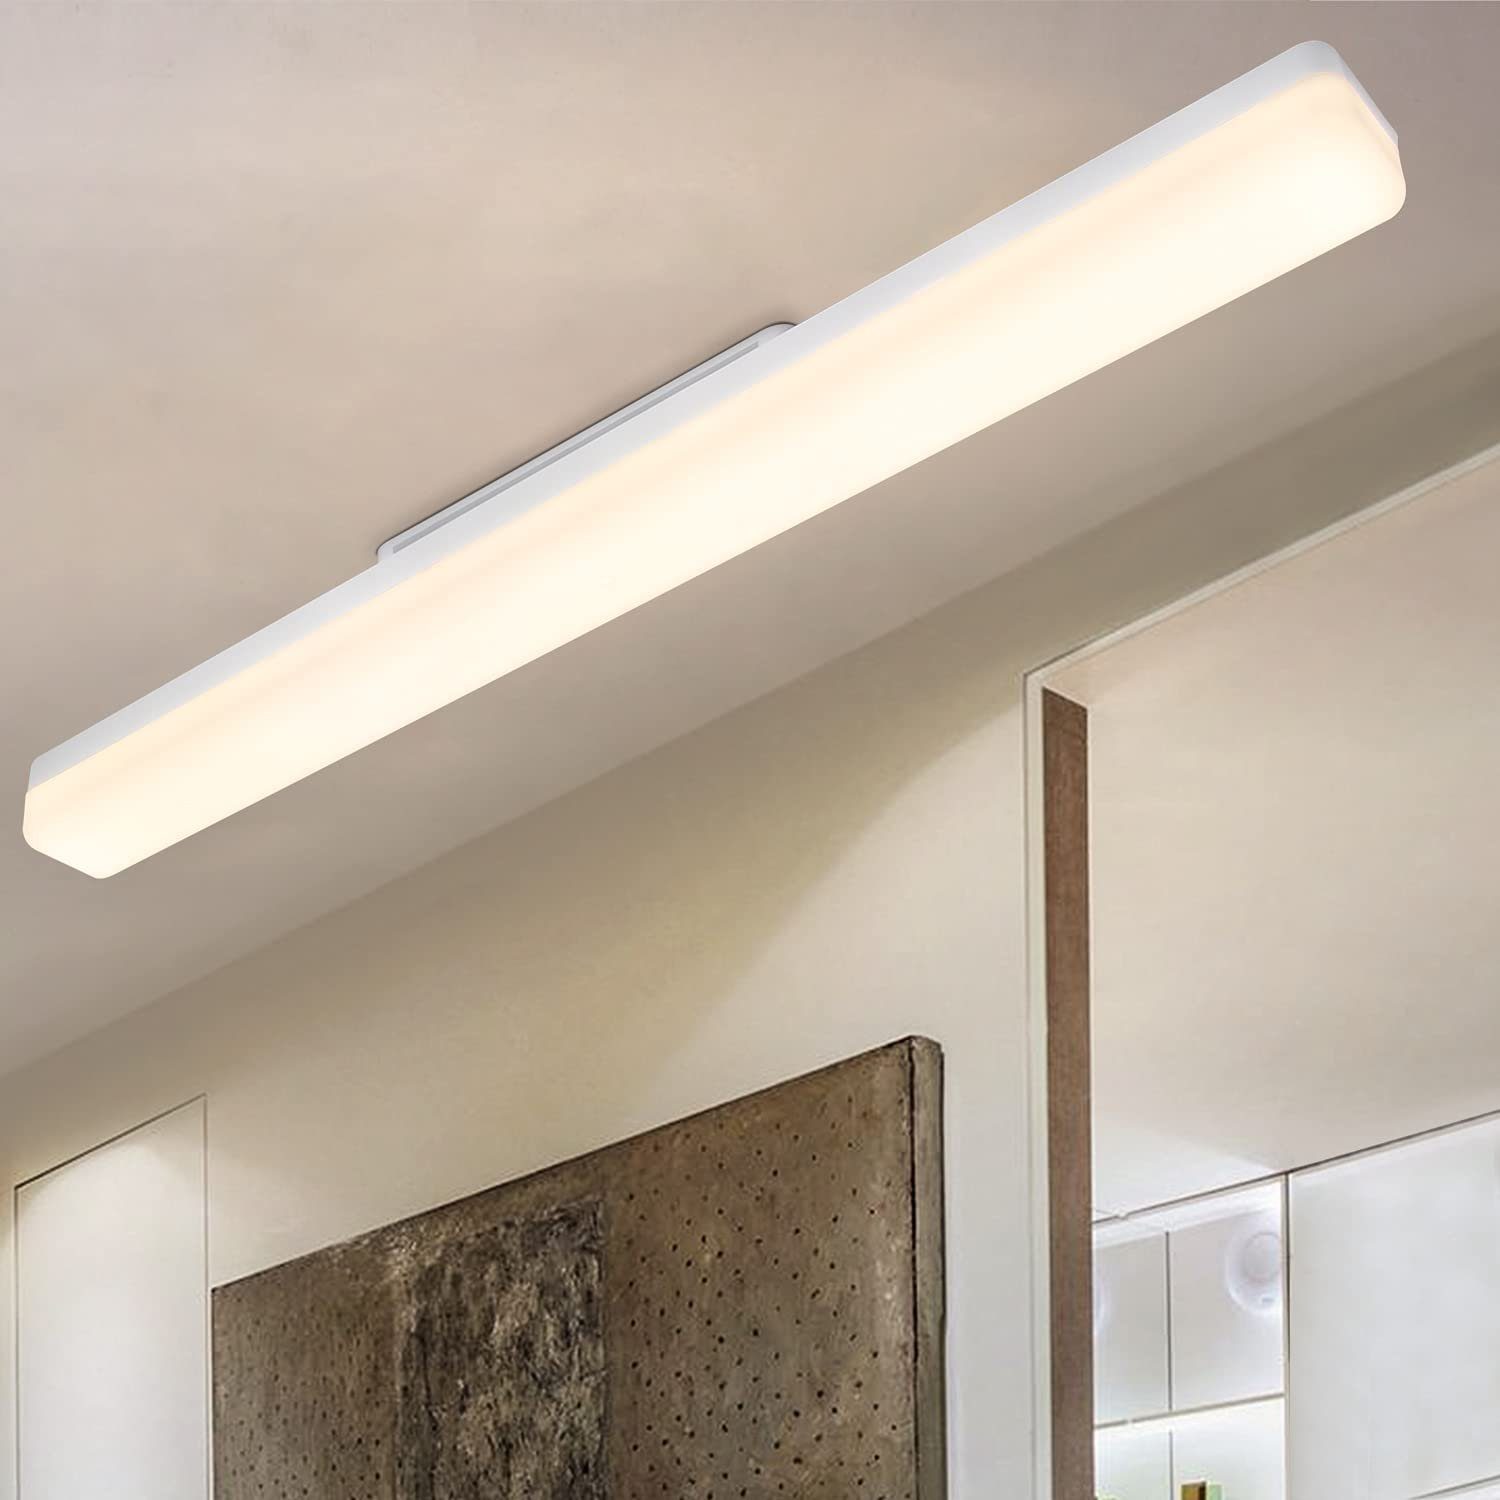 ZMH LED Deckenleuchte Modern Deckenlampe Tageslicht weiß Augenschutz für Schlafzimmer Flur, Einfache Installation, LED fest integriert, Tageslichtweiß, 18W Flurlampe, 4000K, für Keller Büro Garage